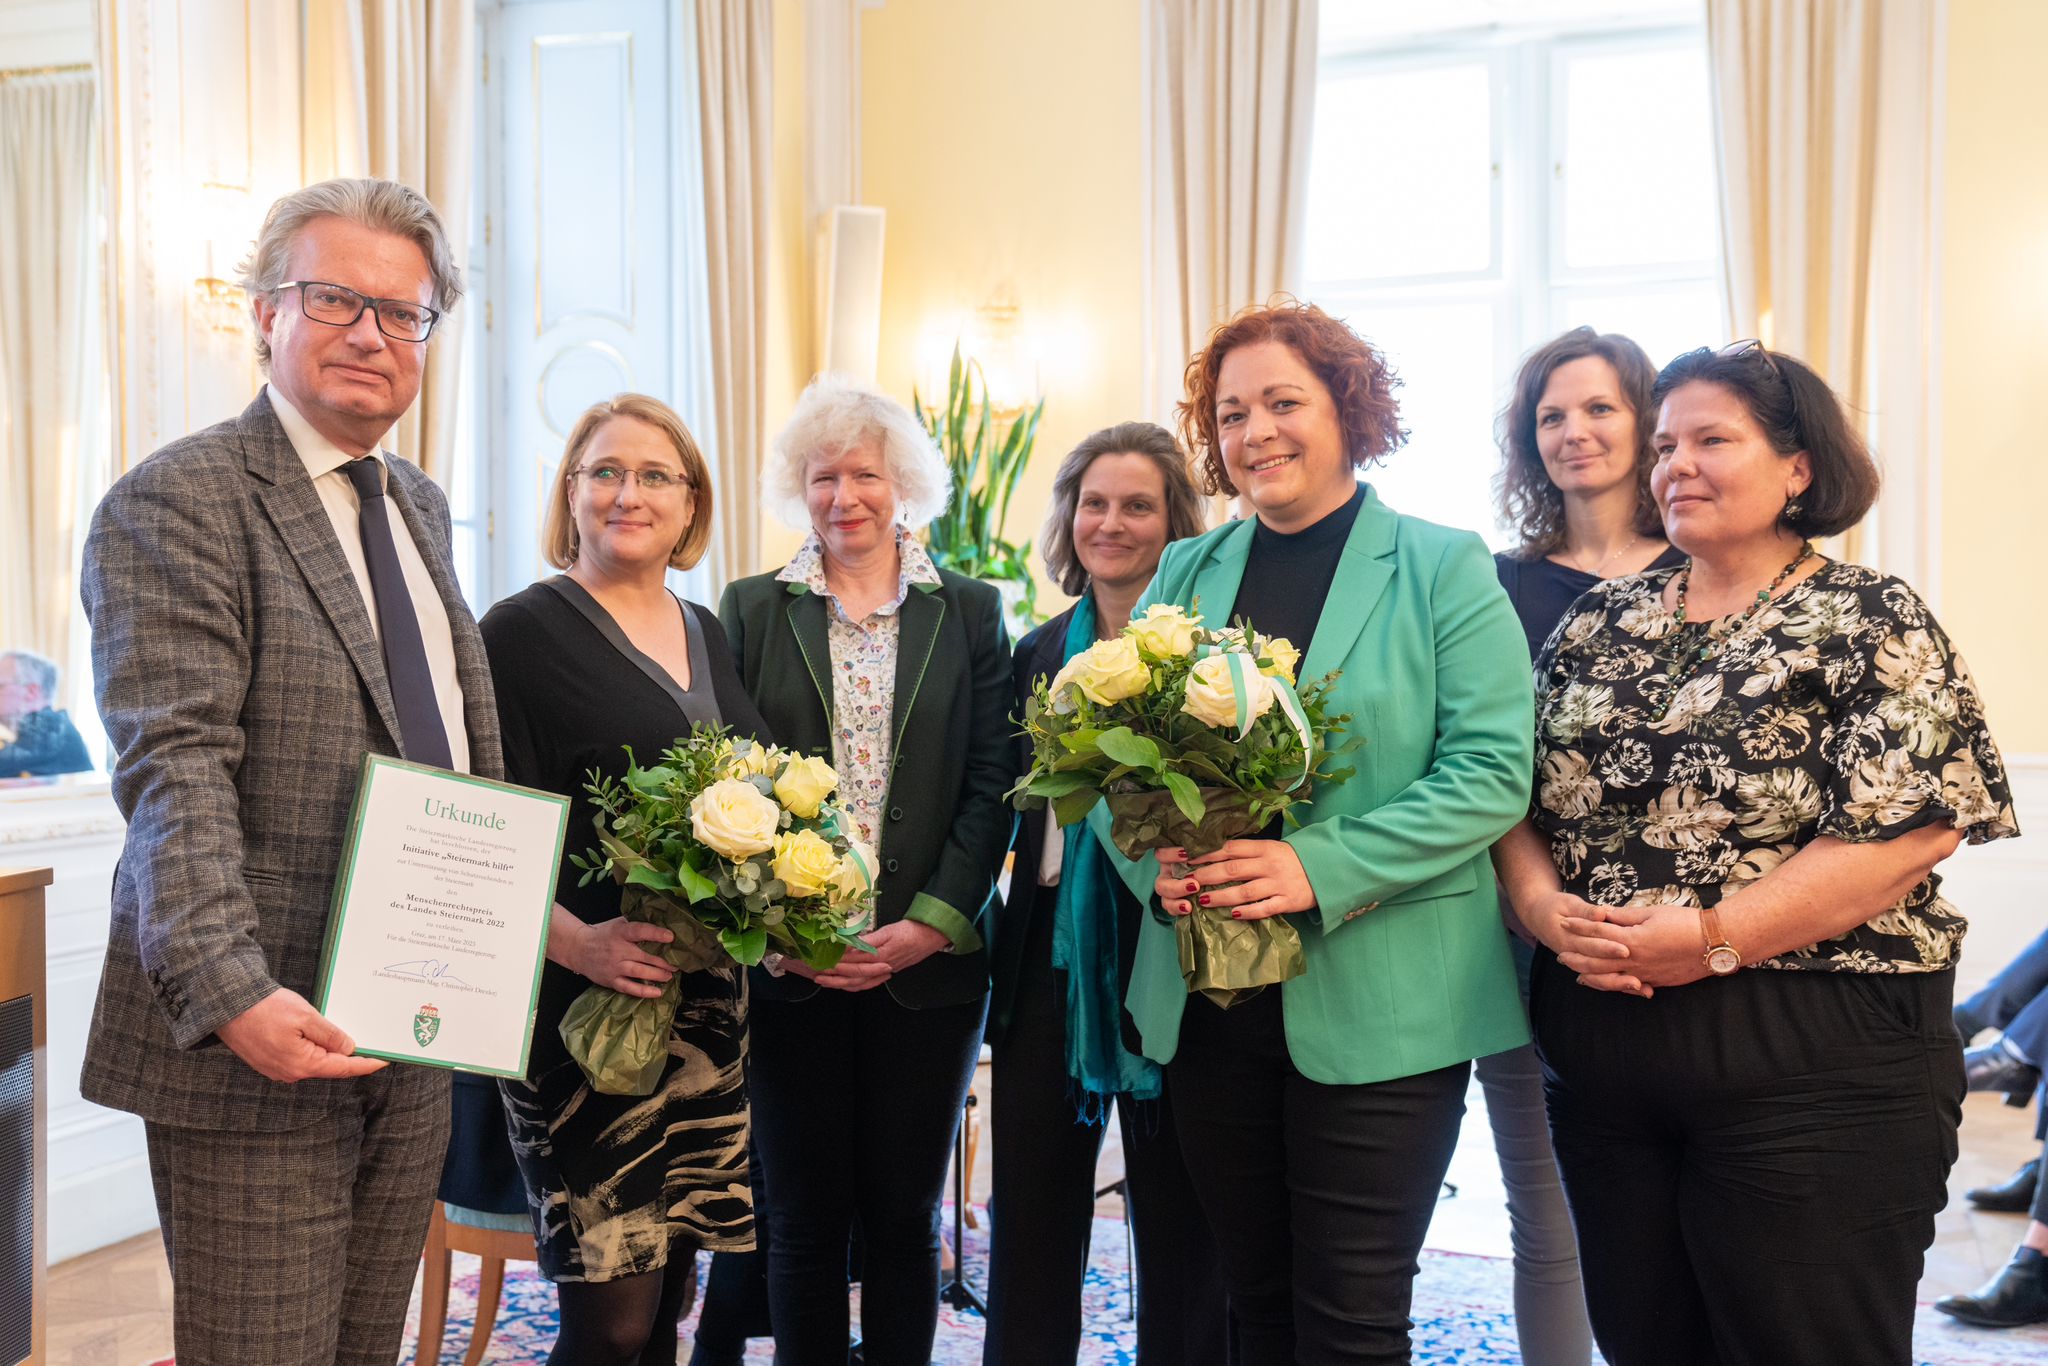 Steiermark hilft erhält den Menschenrechtspreis des Landes Steiermark 2022